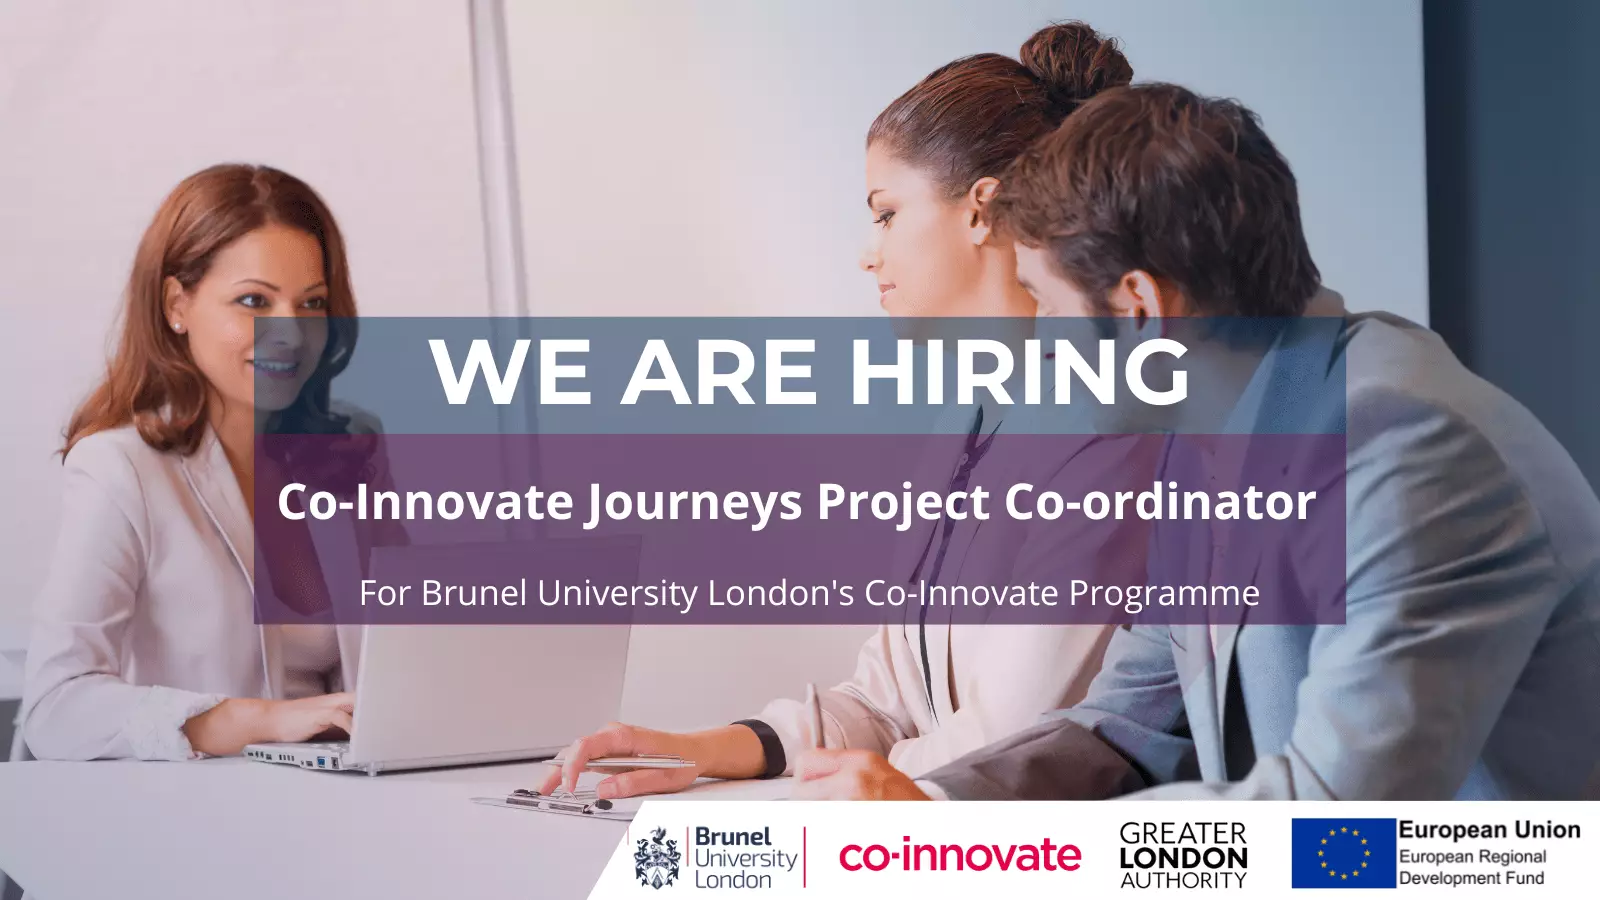 Co-Innovate, Brunel University London is hiring.